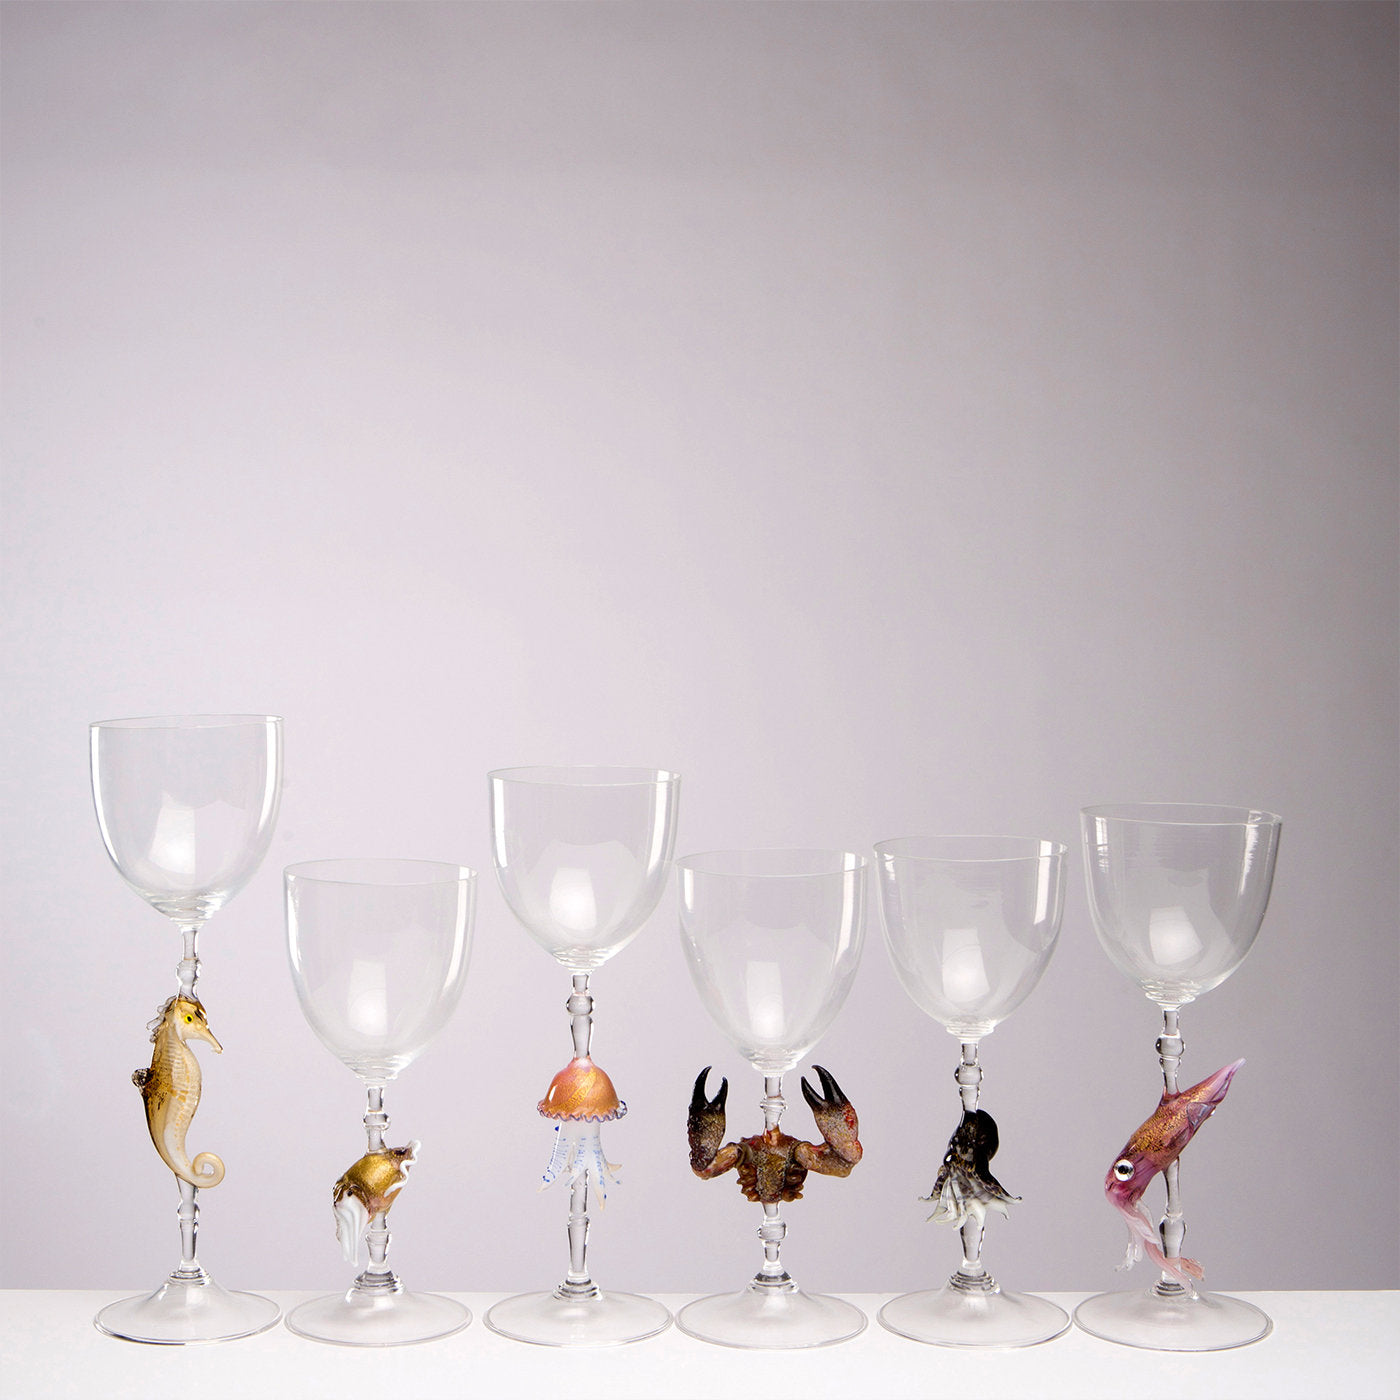 Jelly Fish Murano Wine Glass - Alternative view 3